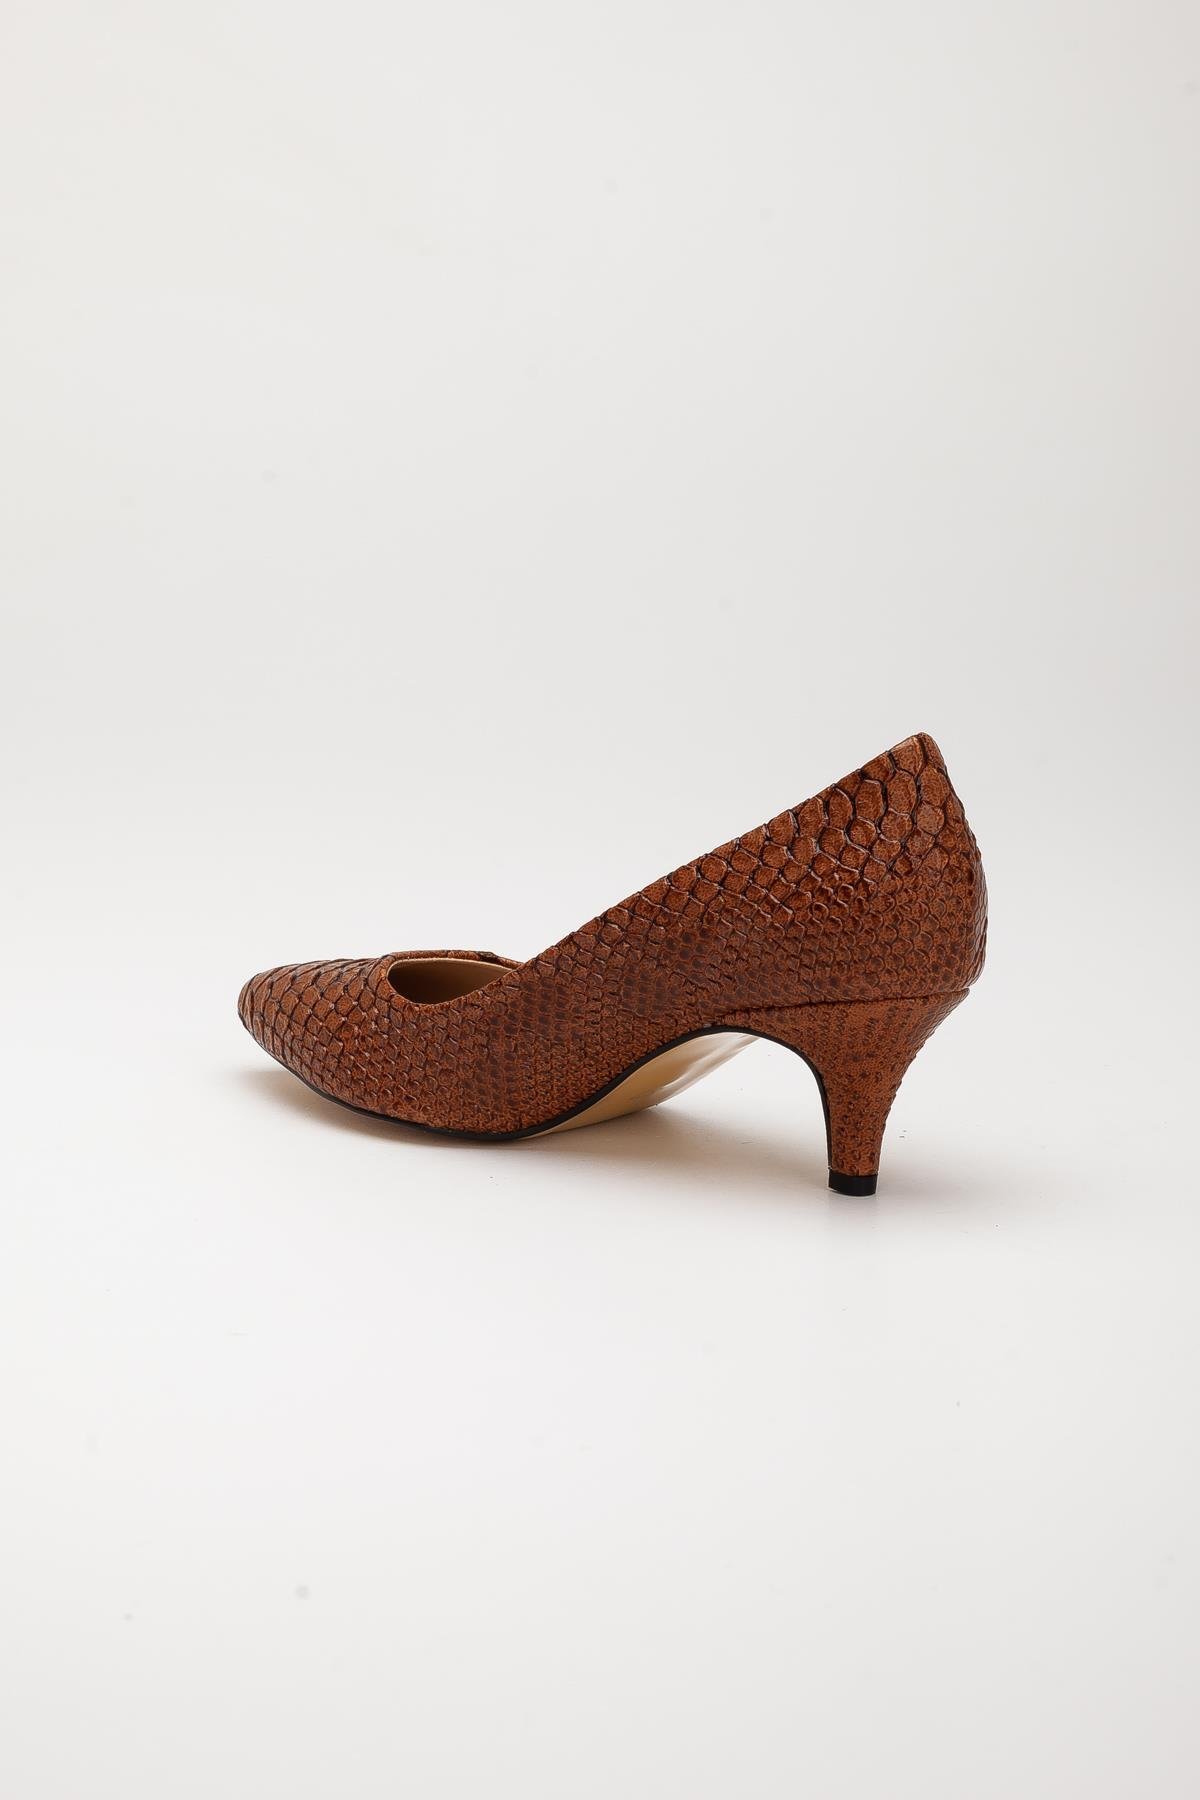 Baskılı Deri Sade Model Taba Büyük Numara Kadın Ayakkabısı Topuklu